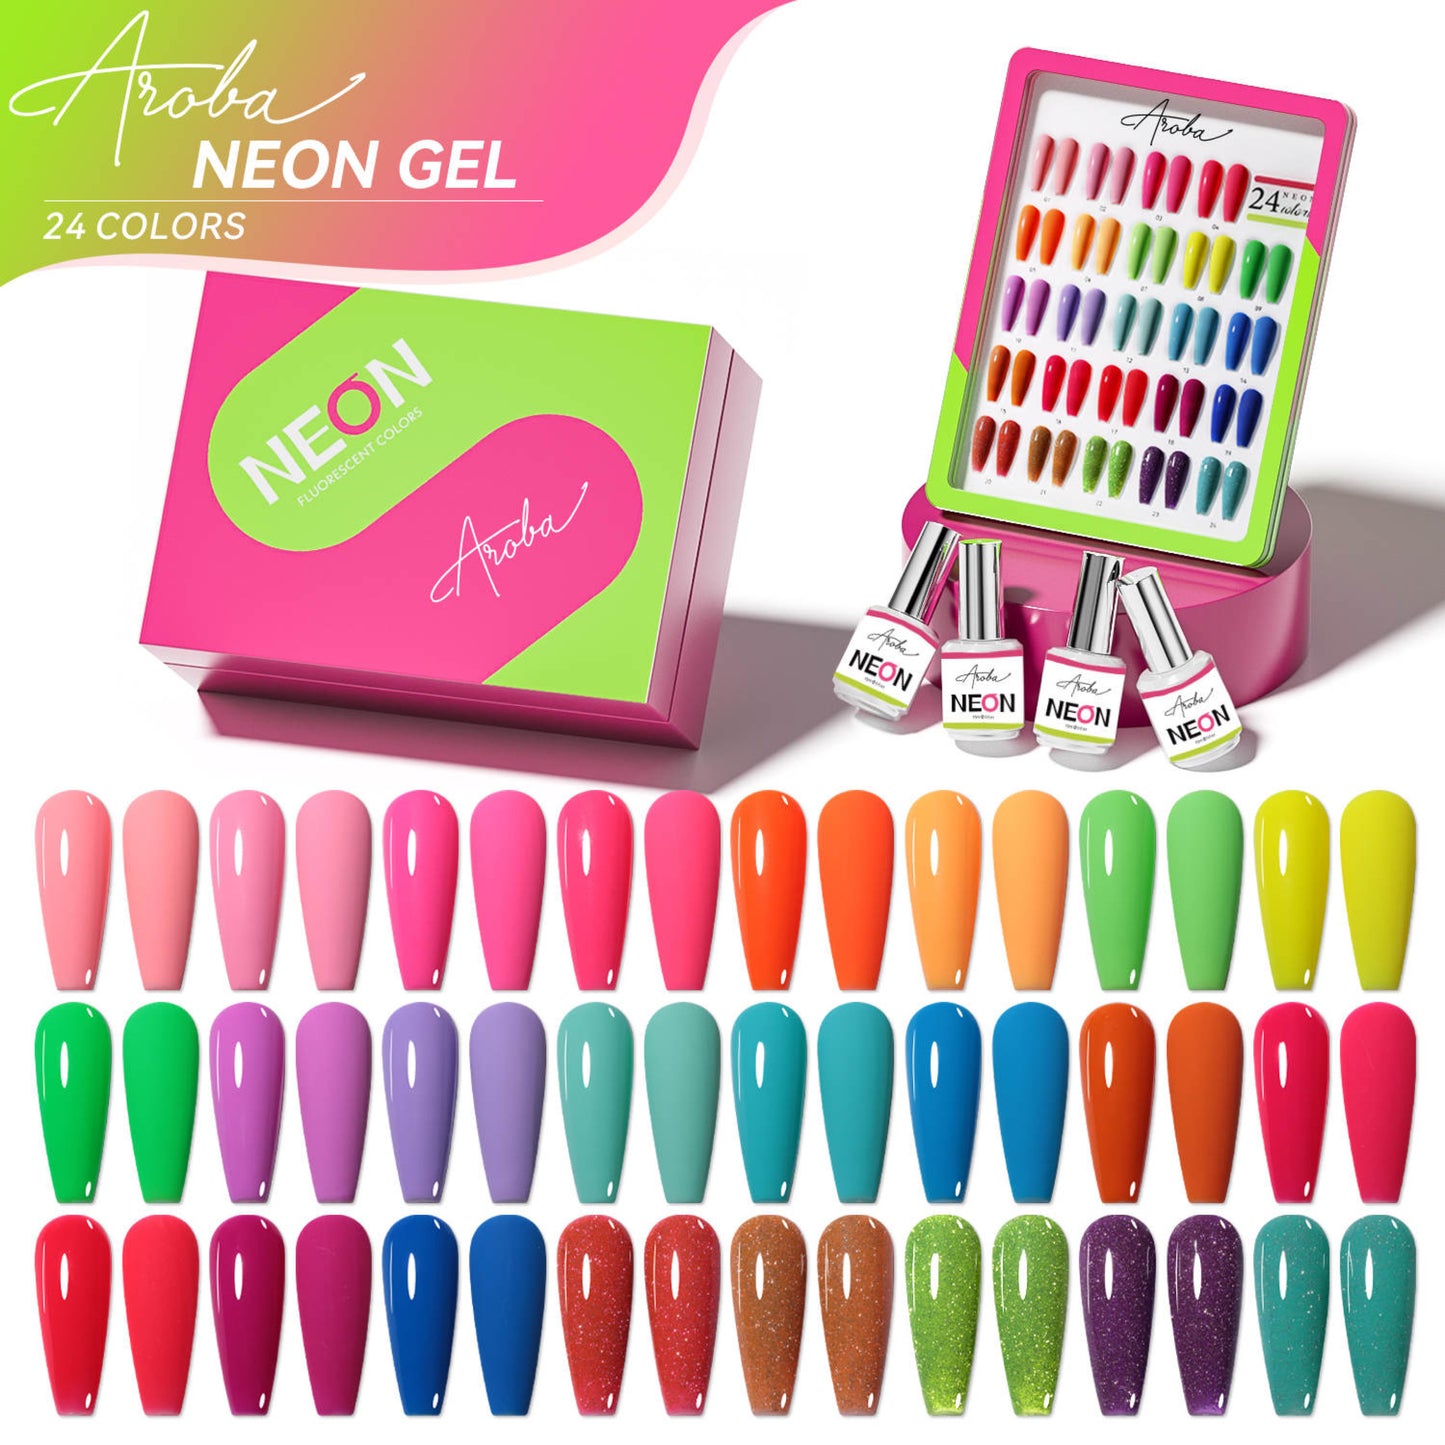 Neon Box: 24 colores. Recibe Gratis Carta de color.